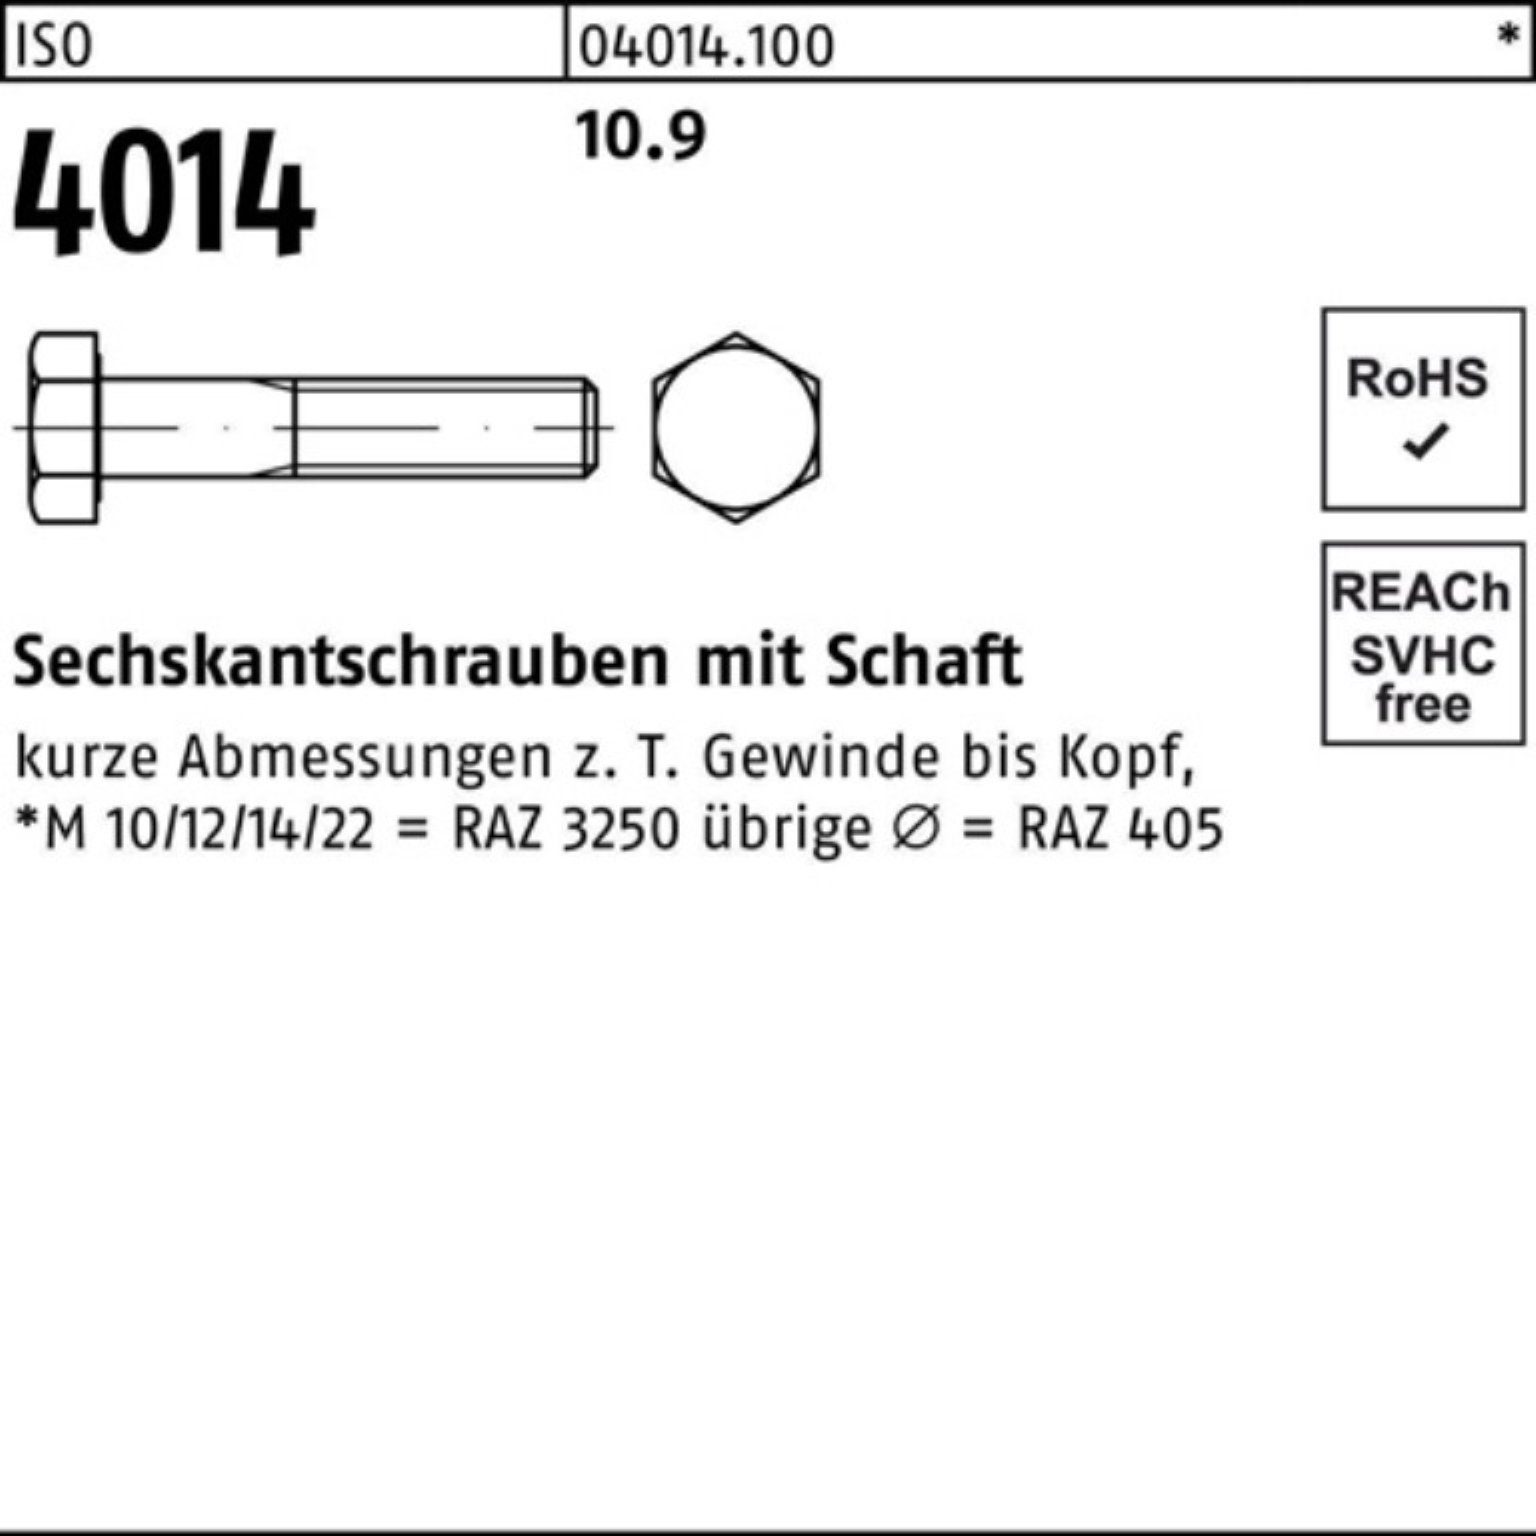 Schaft Pack 4014 240 1 10.9 100er M27x Stück Sechskantschraube Sechskantschraube Bufab ISO IS